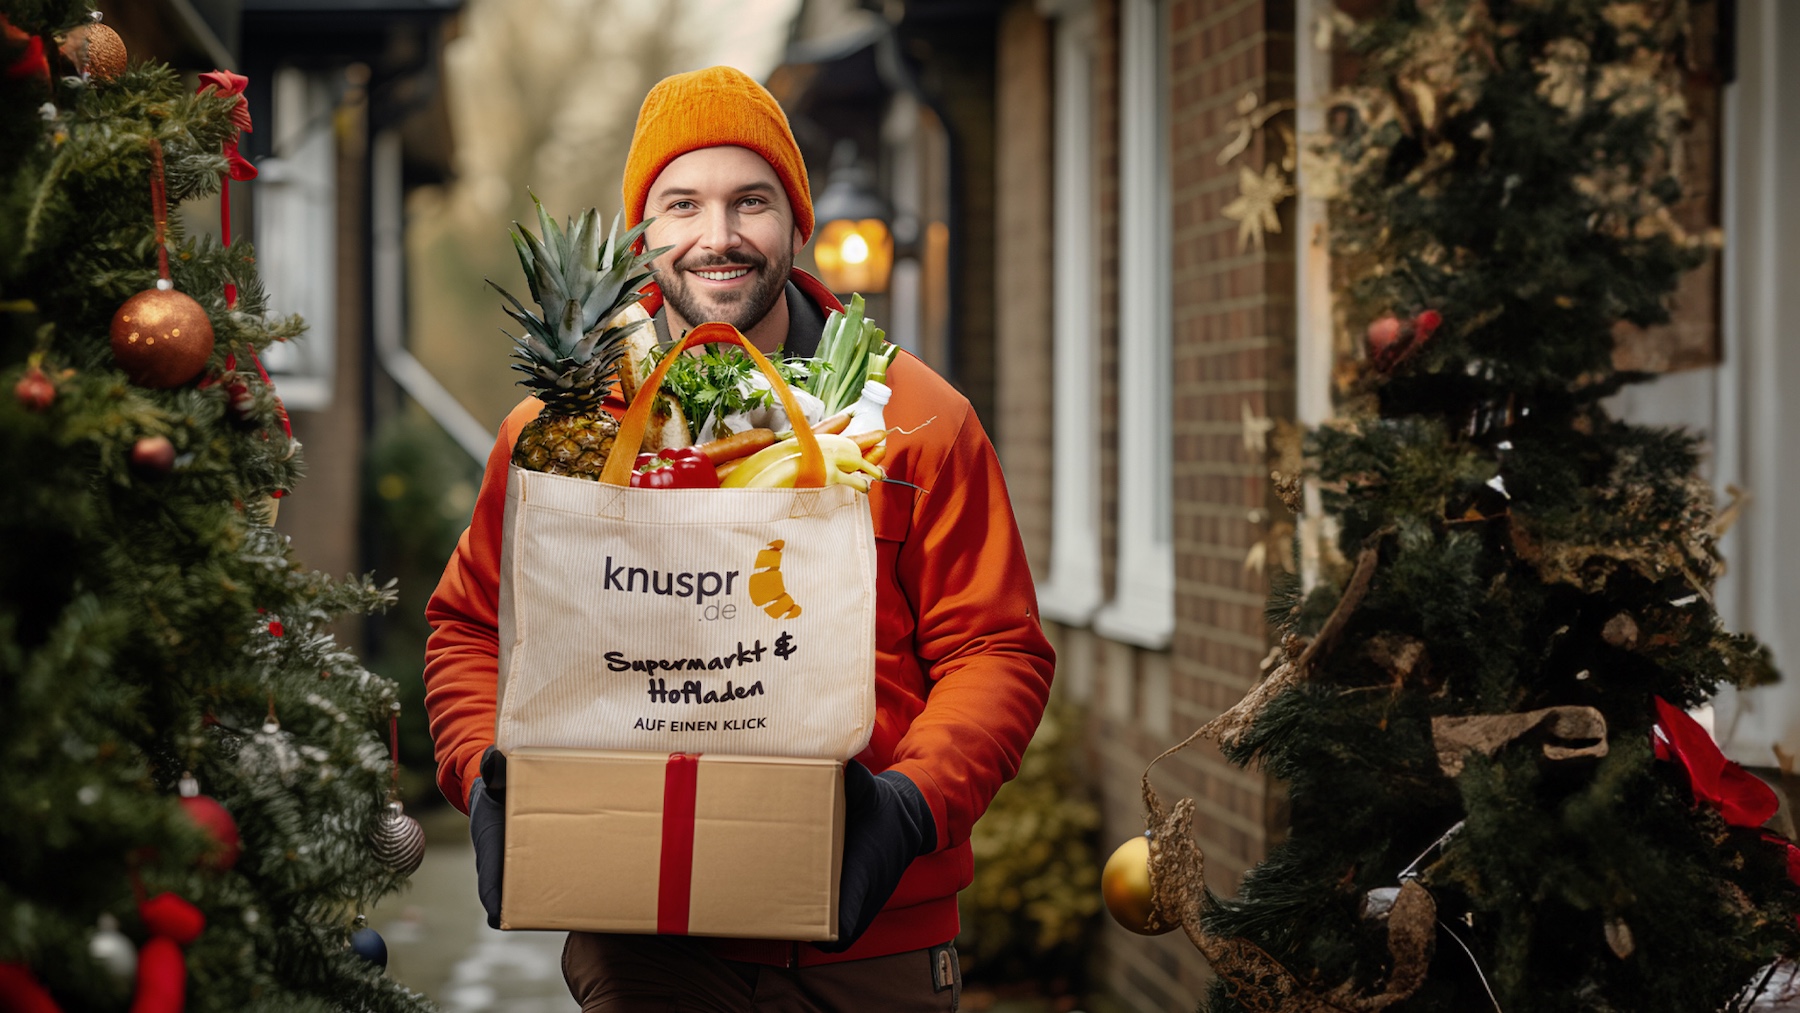 Besonderer Service zum Fest: Online-Supermarkt Knuspr liefert Weihnachtsbäume bis zur Haustür